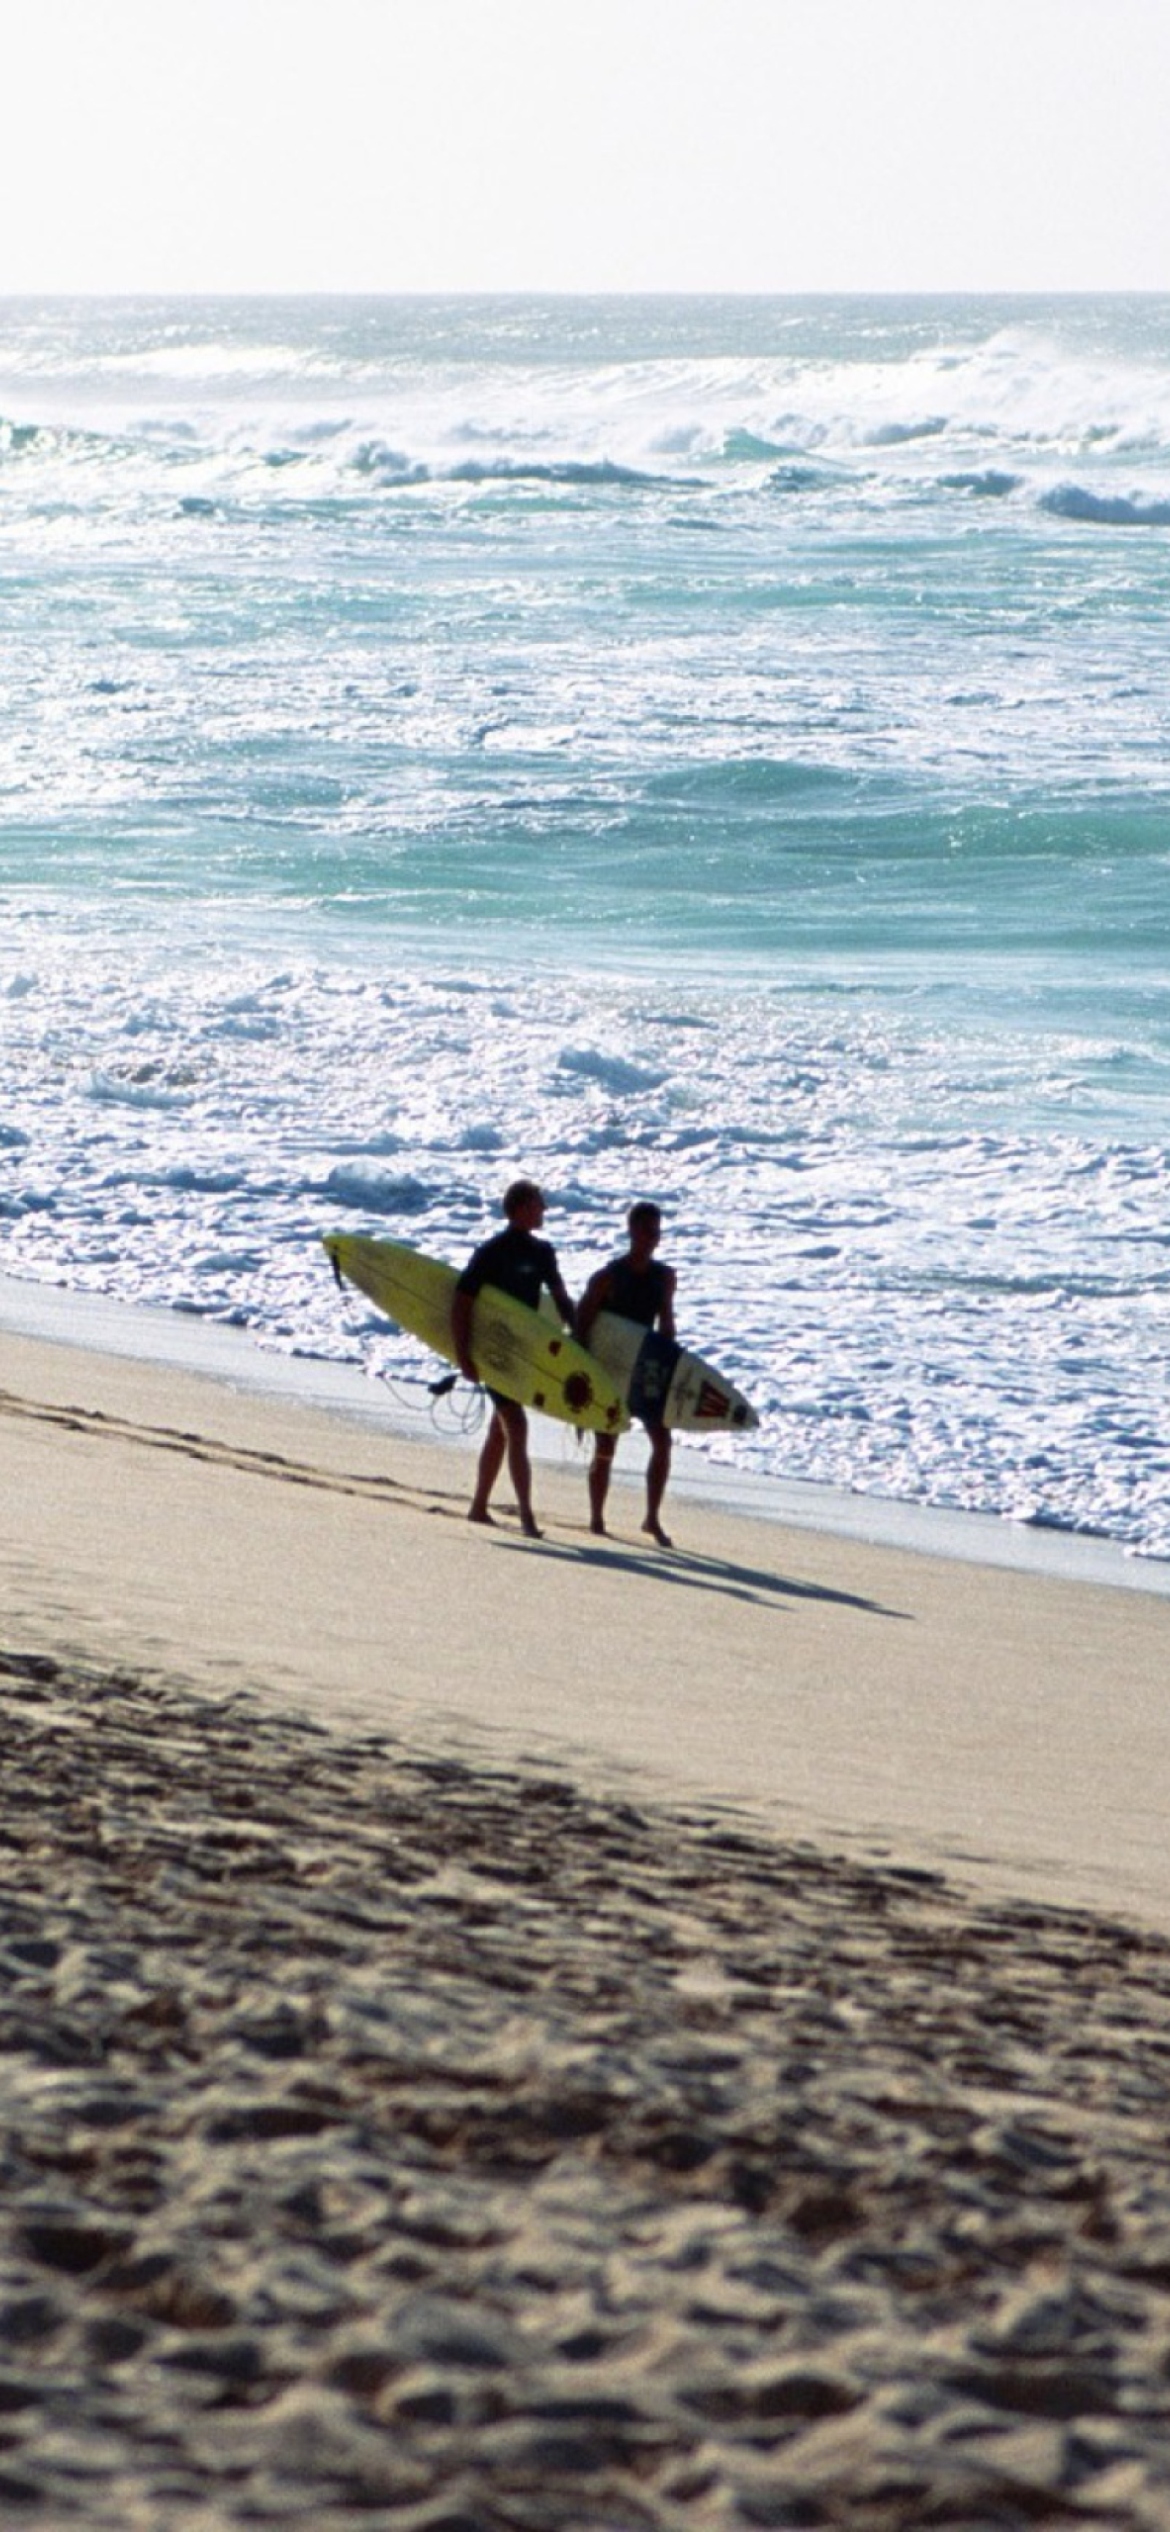 Sfondi Summer Surfing 1170x2532